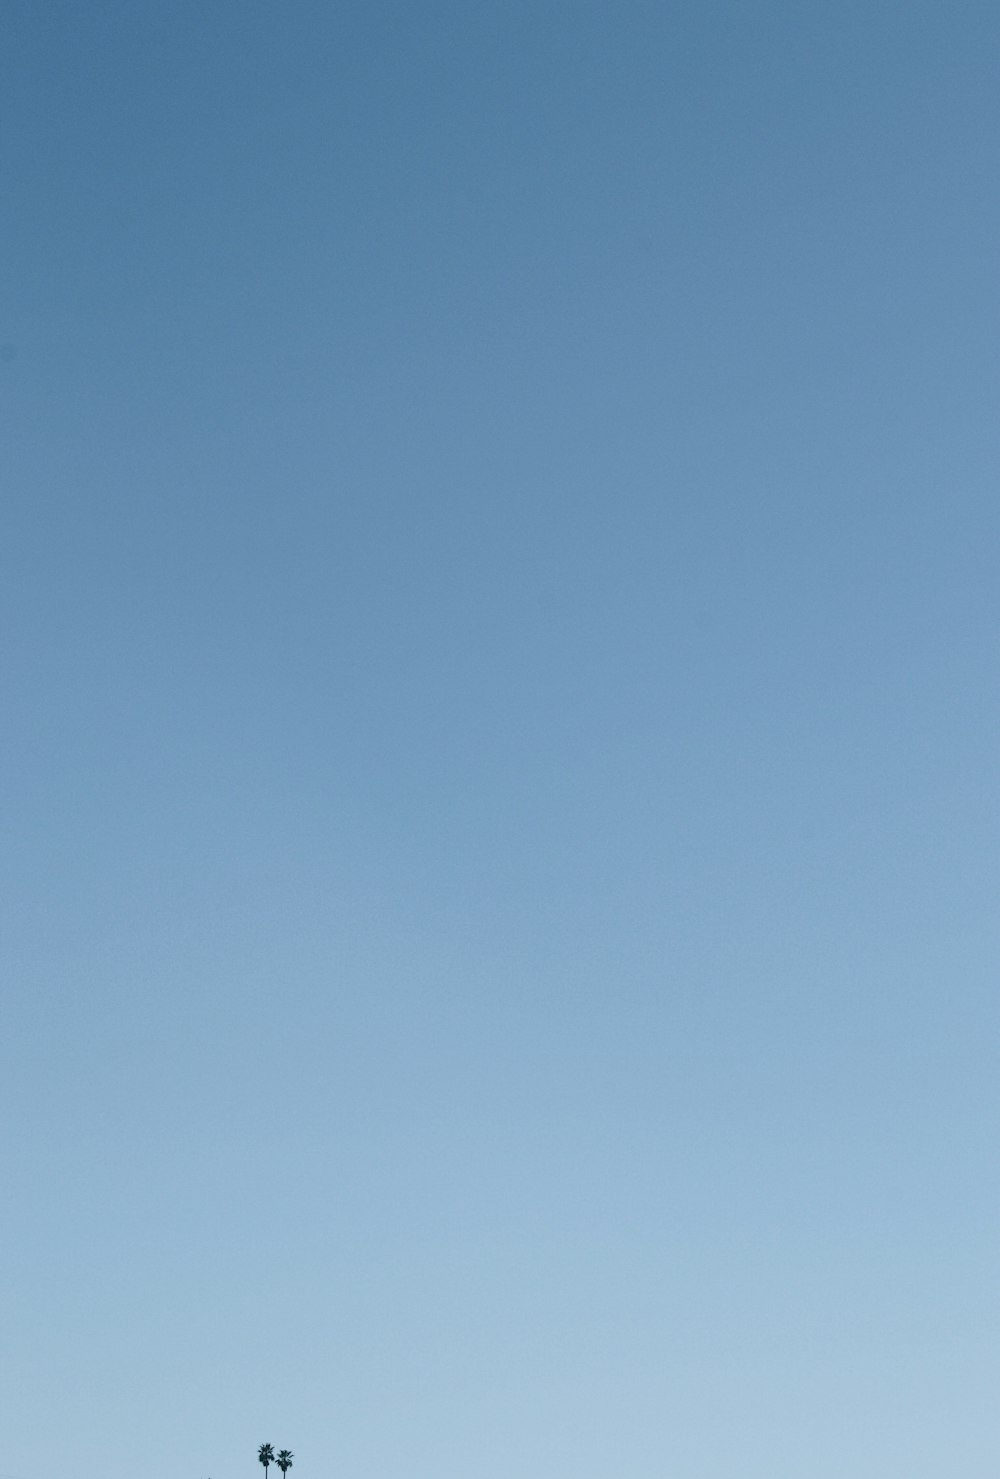 une personne volant un cerf-volant dans un ciel bleu